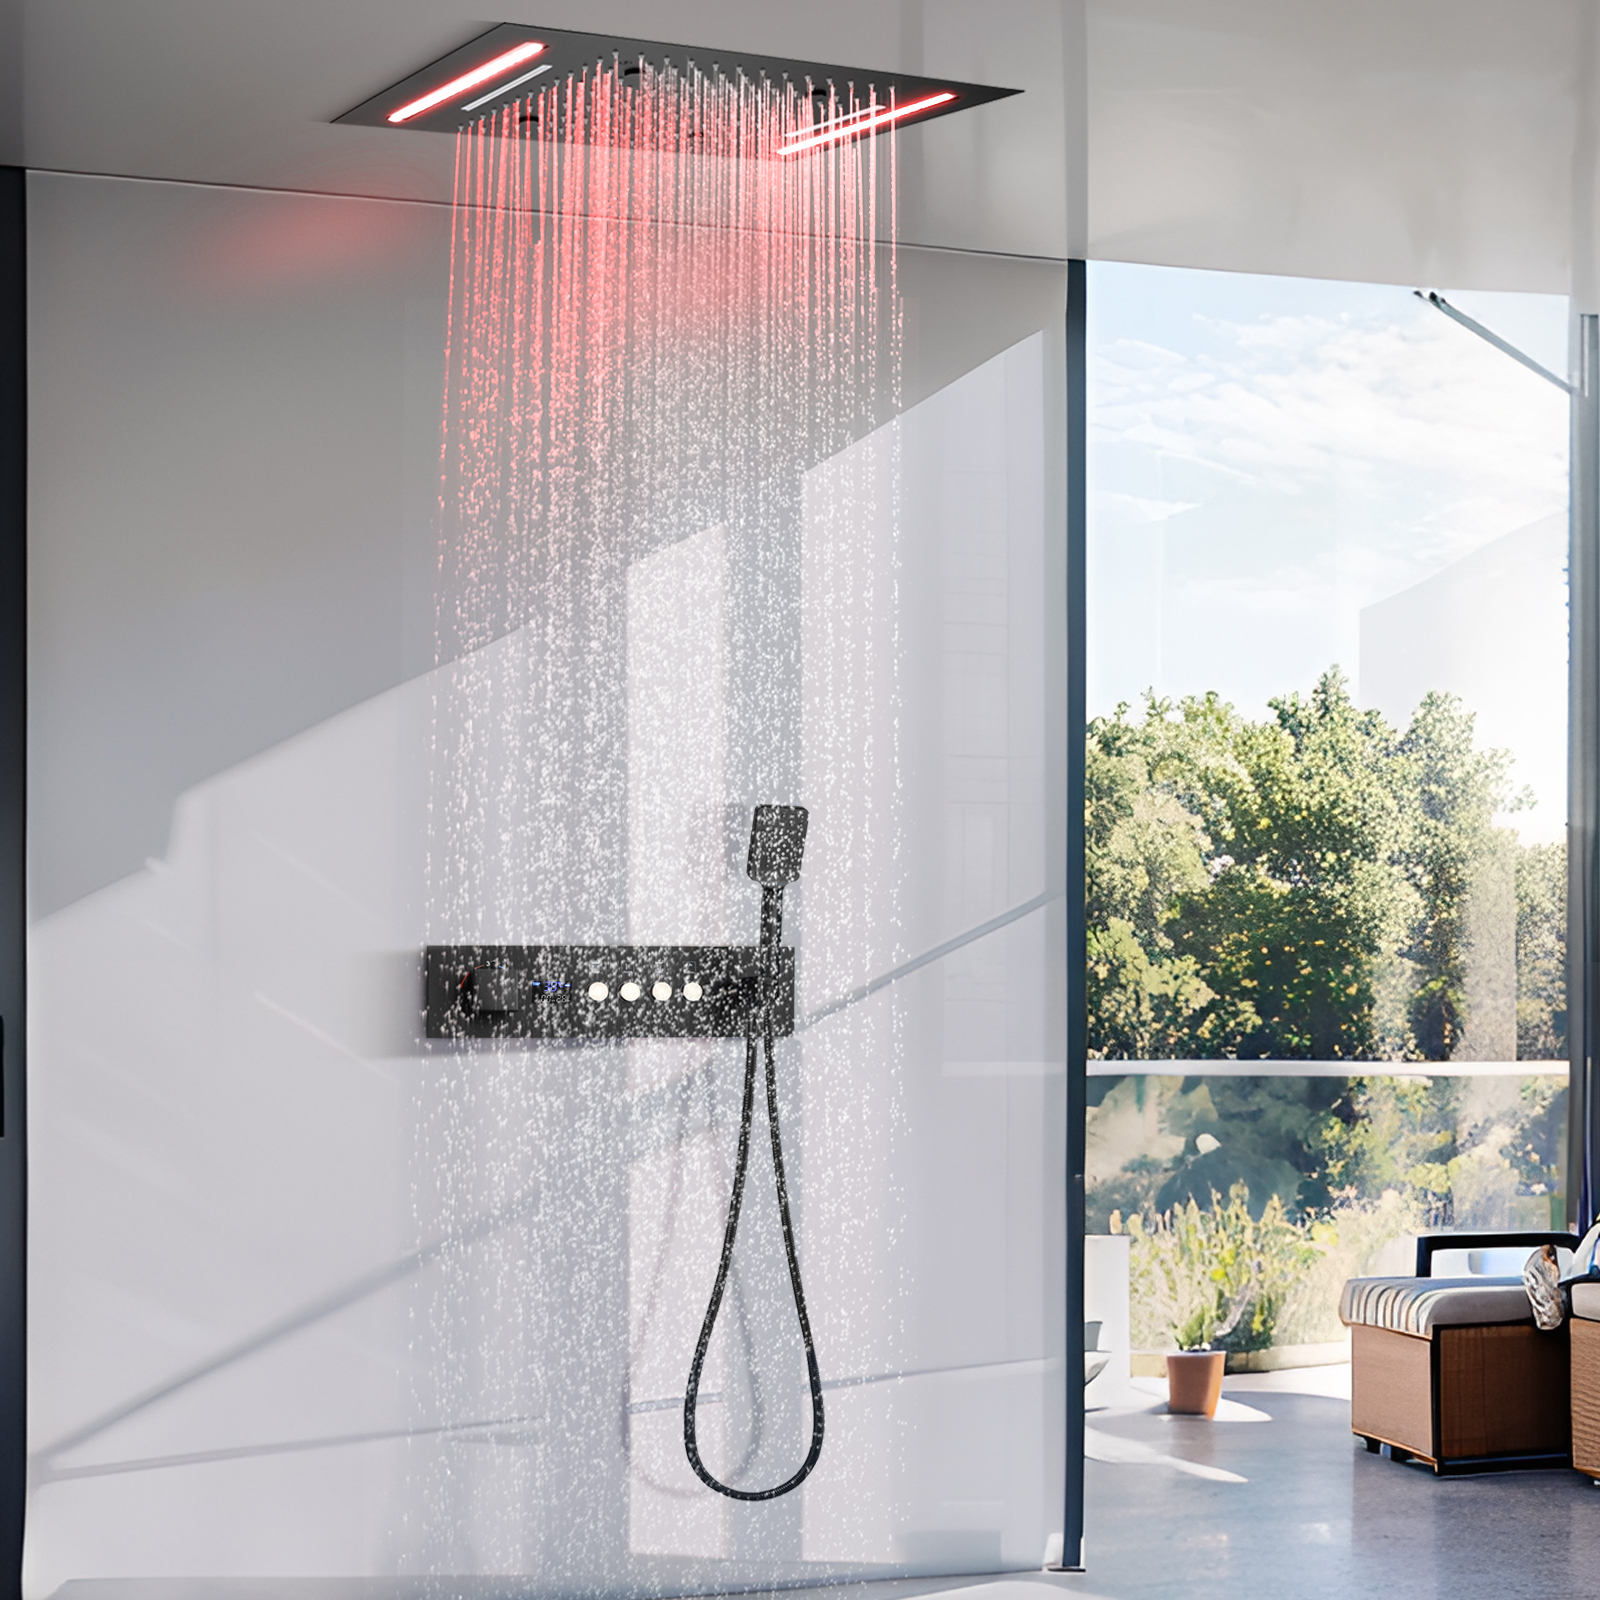 Tela de exibição led preta fosca, conjunto digital de torneira de chuveiro de temperatura constante, sistema de massagem de chuveiro de água de chuva de 4 funções